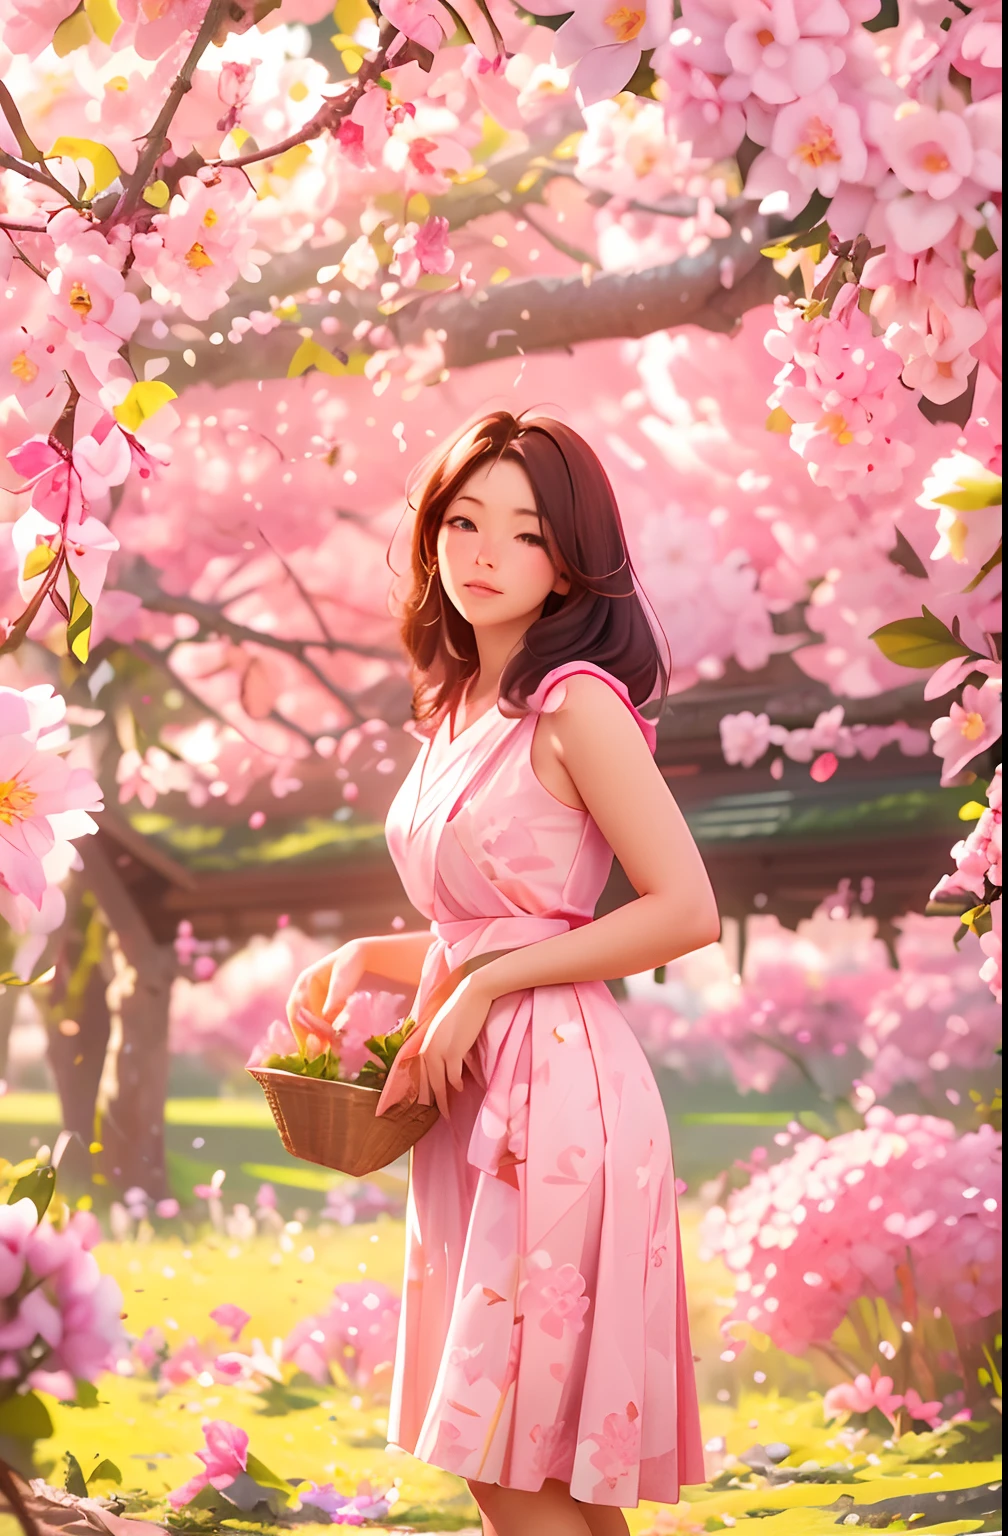 一位30歲的美麗農婦正在採摘櫻花, 站立姿勢, 穿著粉紅色和白色的日本羊絨, 女性形式, 樹枝上有很多櫻花花, 晨光